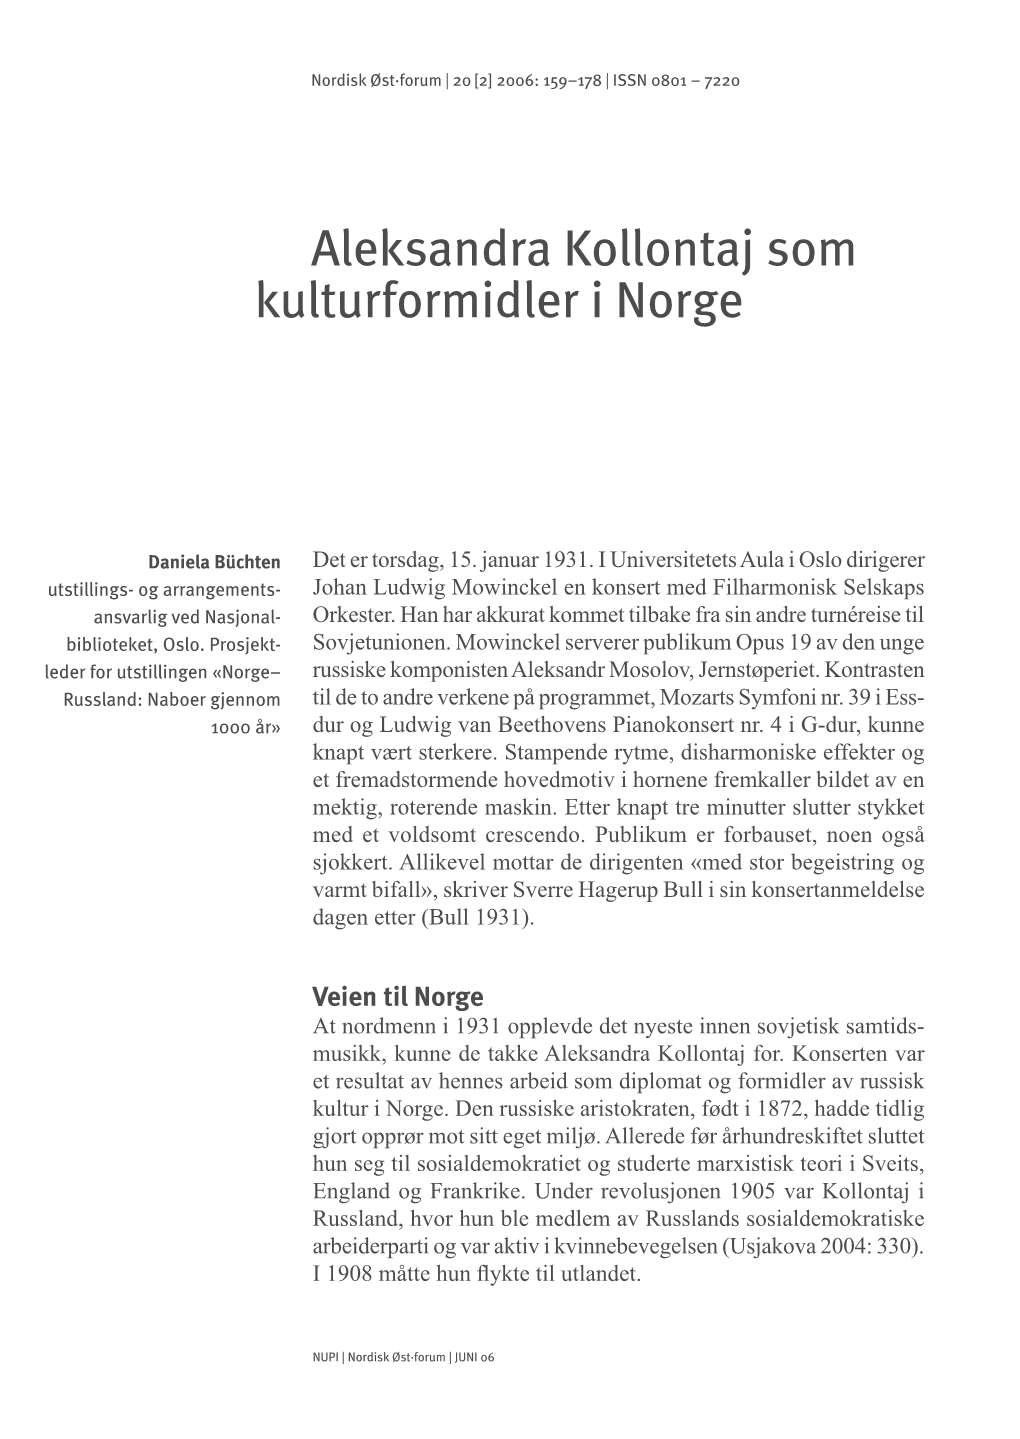 Aleksandra Kollontaj Som Kulturformidler I Norge